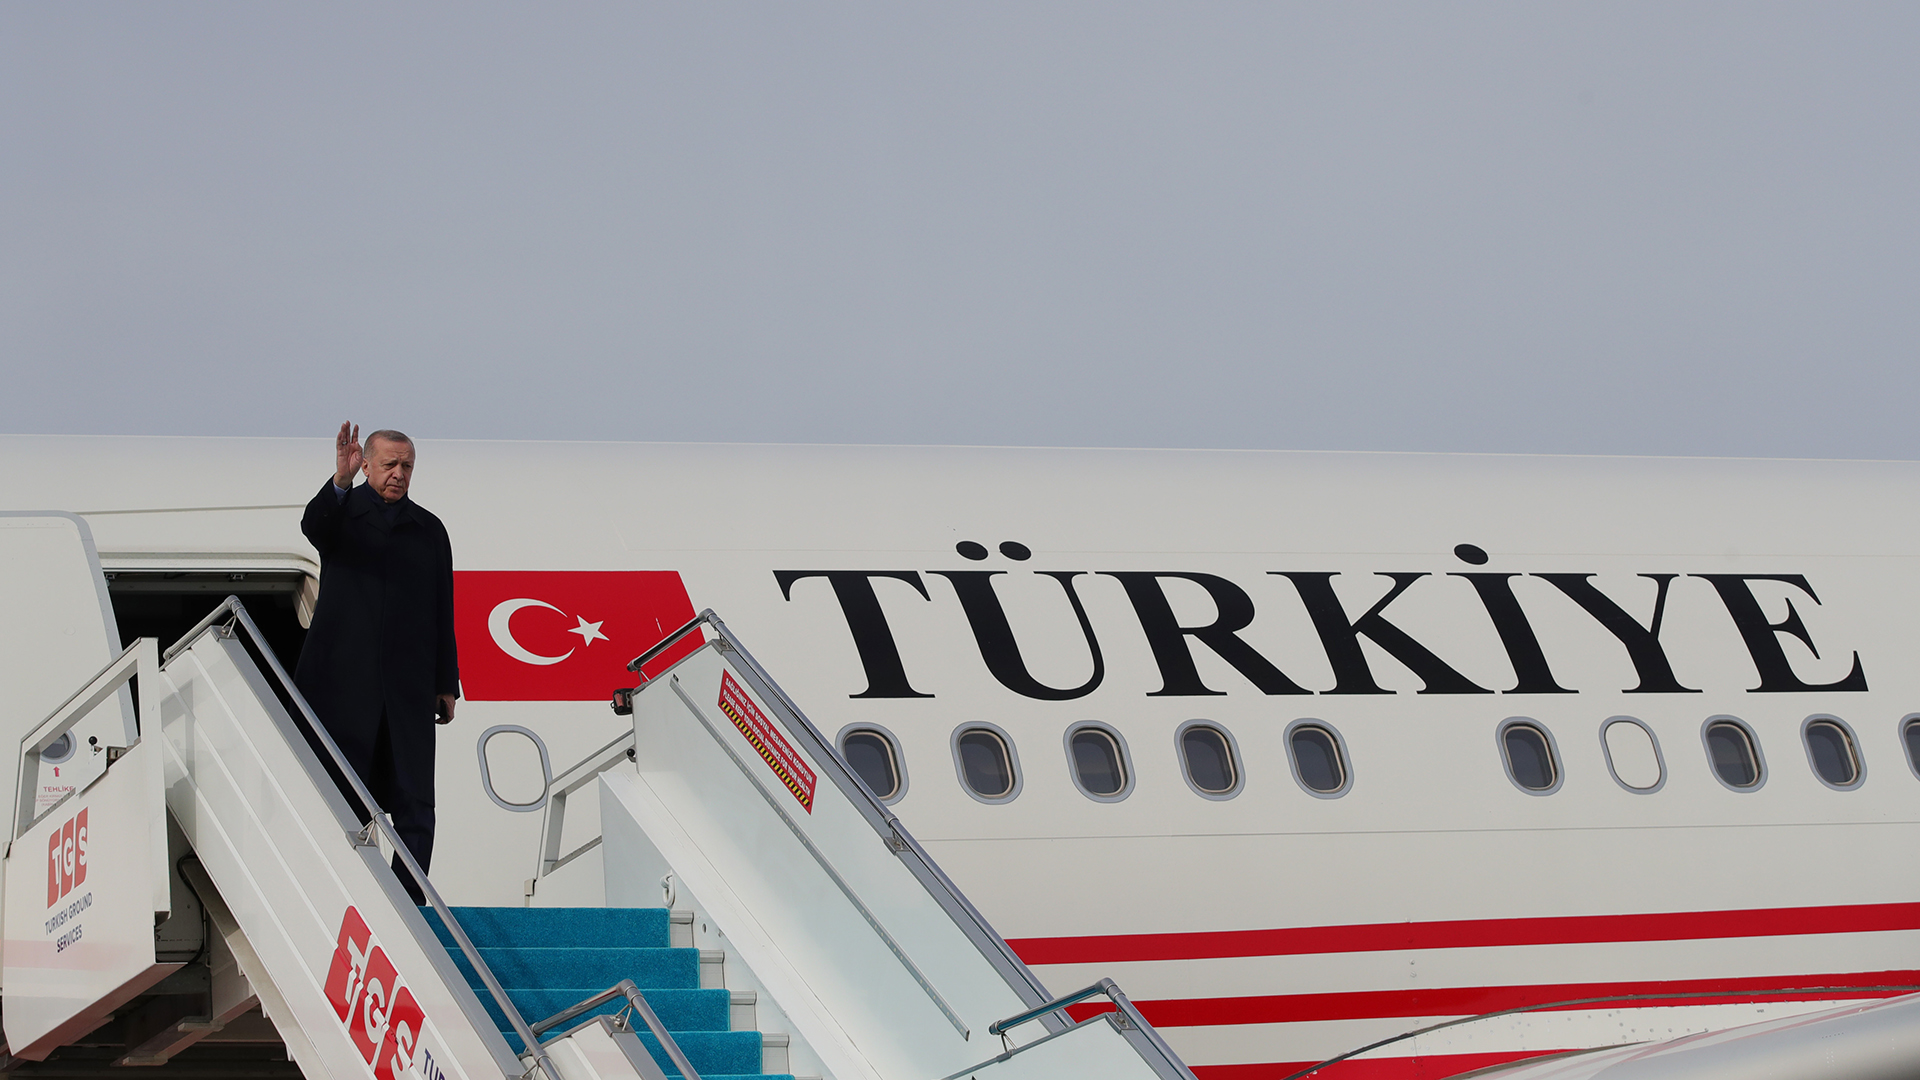 Turkije wil ander label: van “Turkije” naar “Turkije”